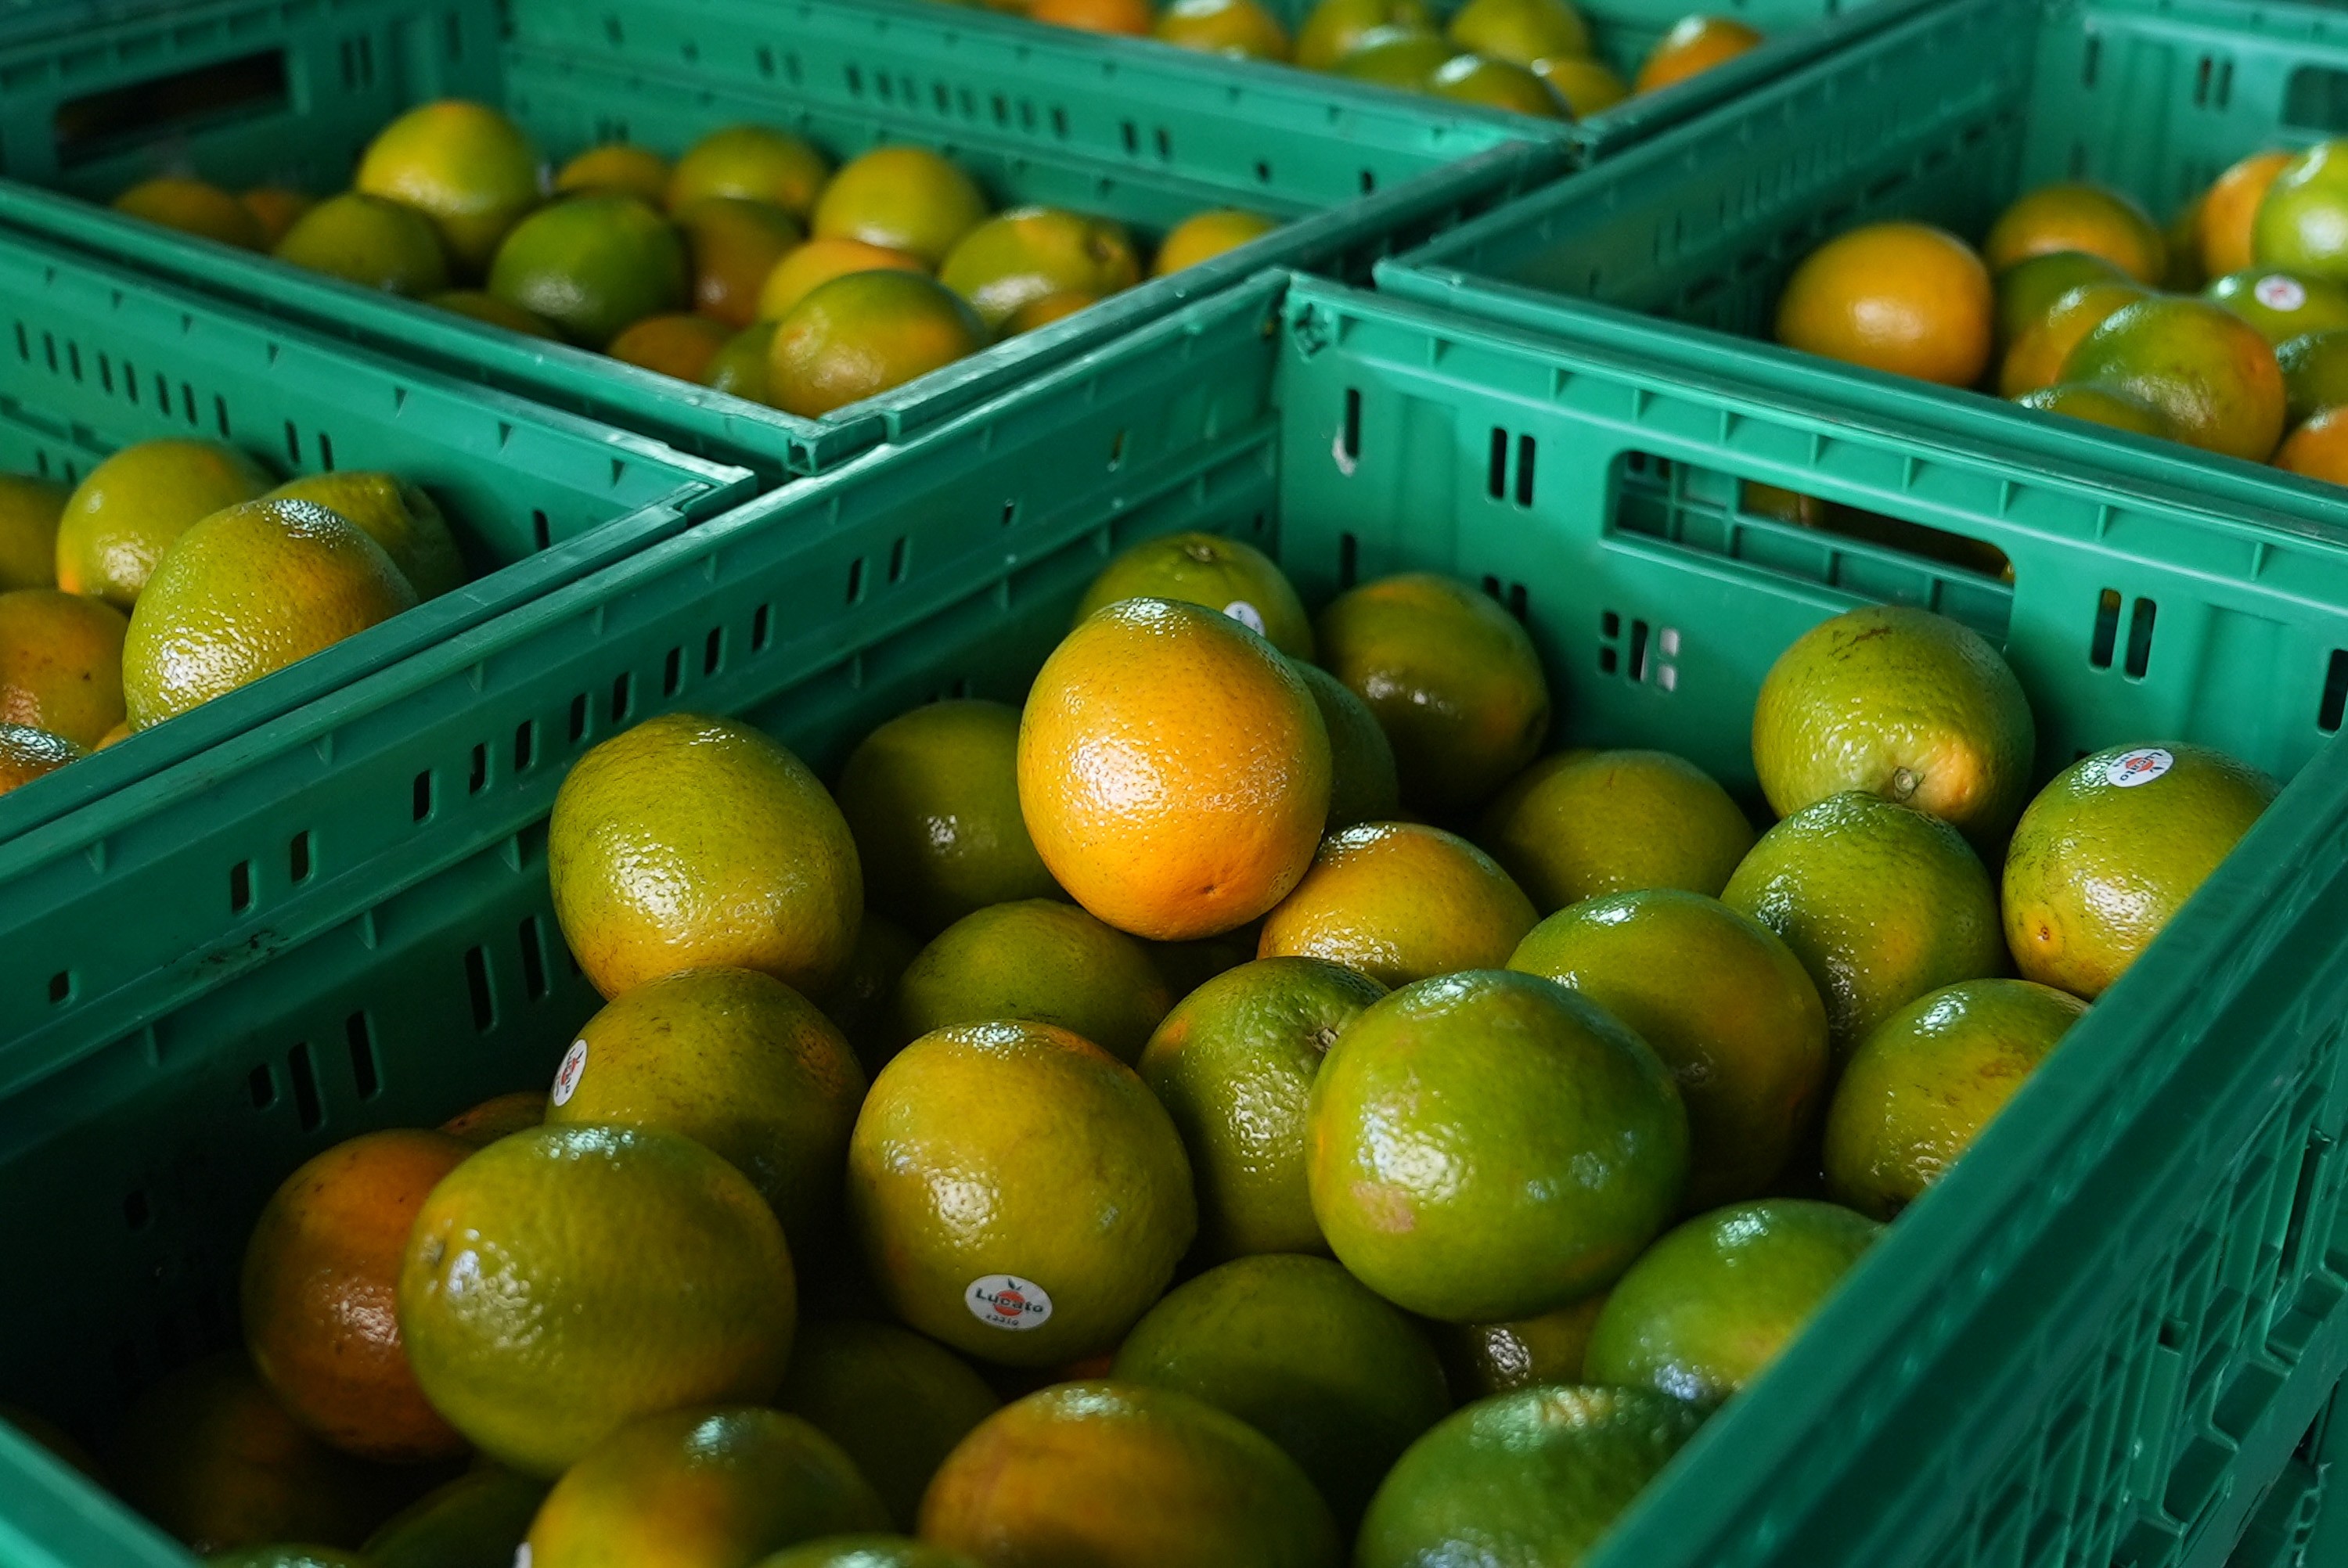 Problemas climáticos enfrentados por Peru, Equador e Espanha impulsionam exportações de frutas do Brasil, aponta USP thumbnail